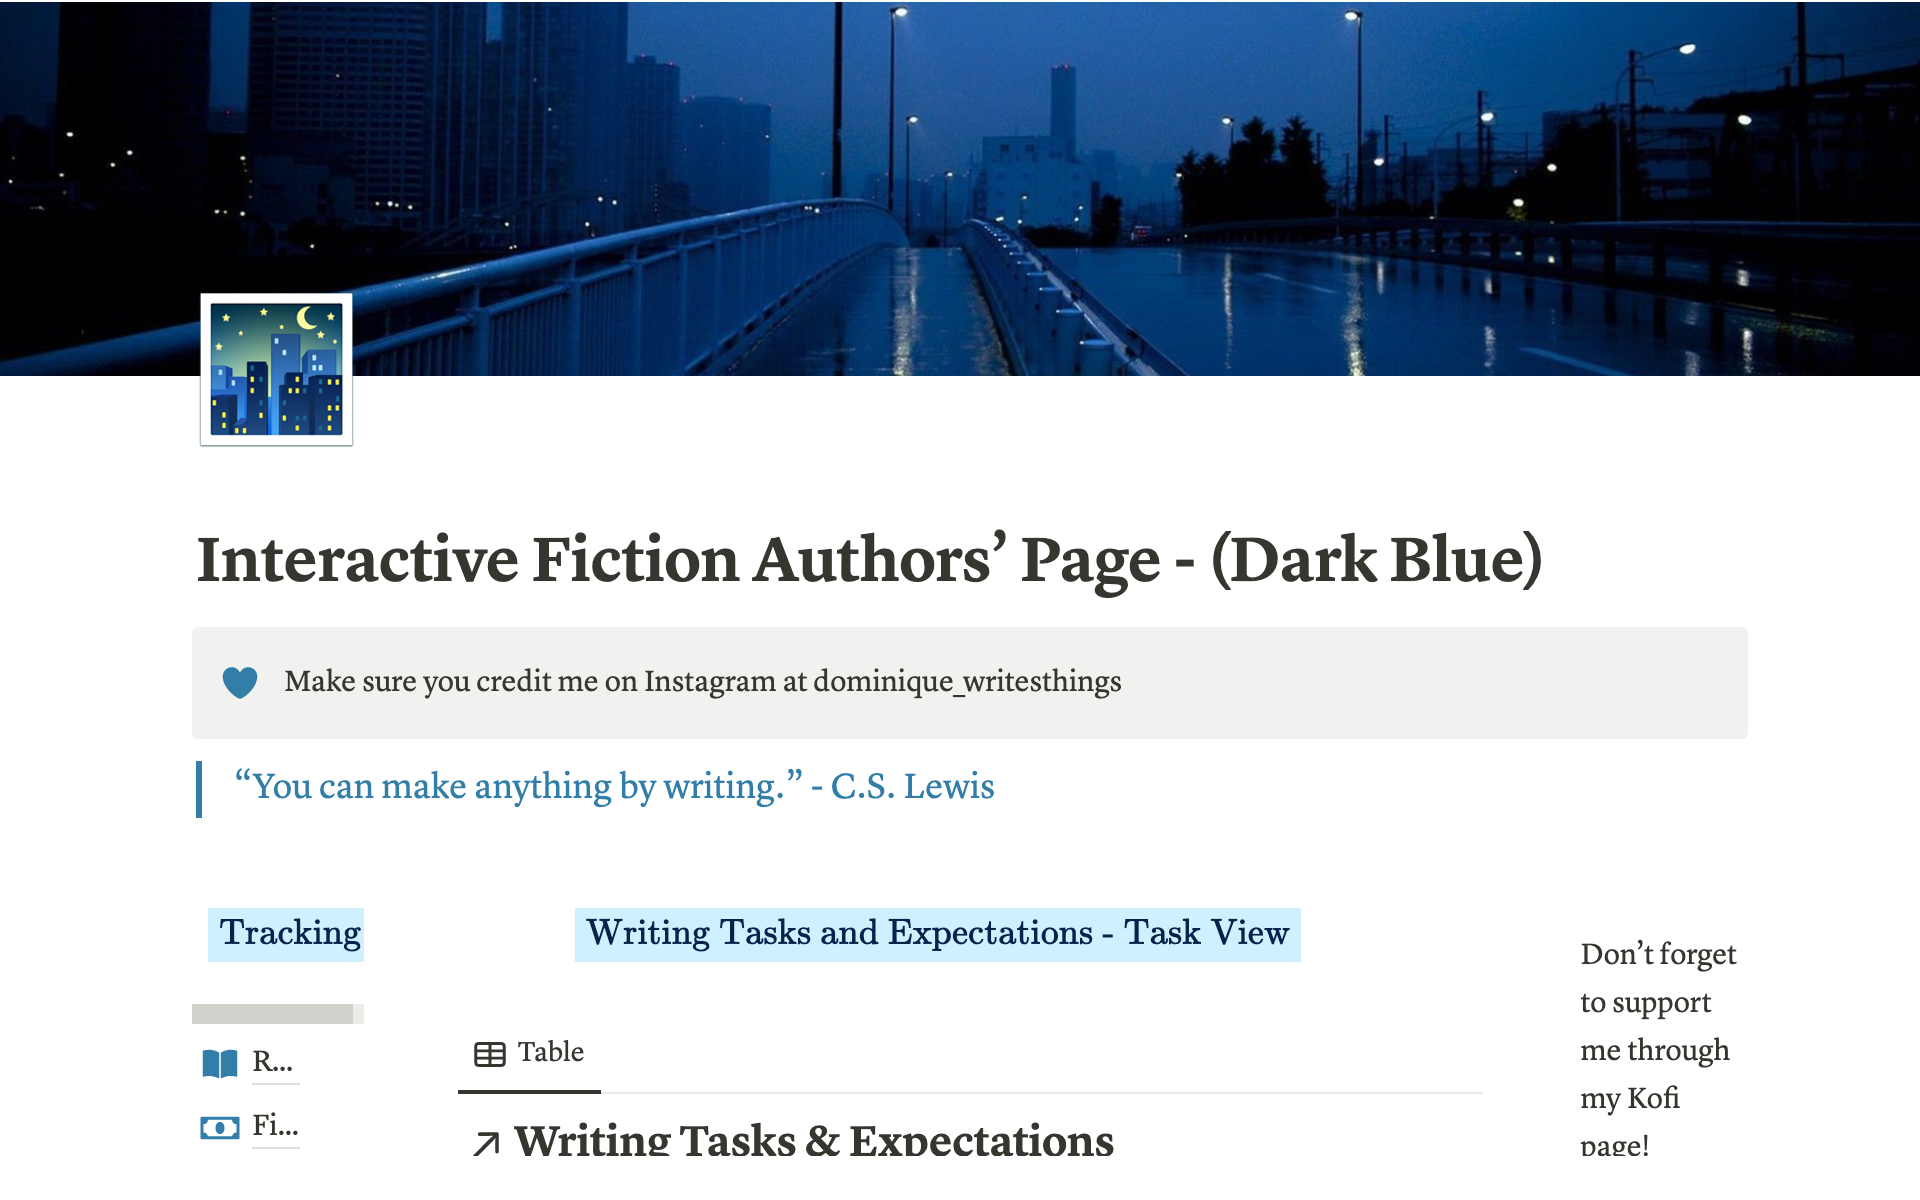 Uma prévia do modelo para Interactive Fiction Author's Page